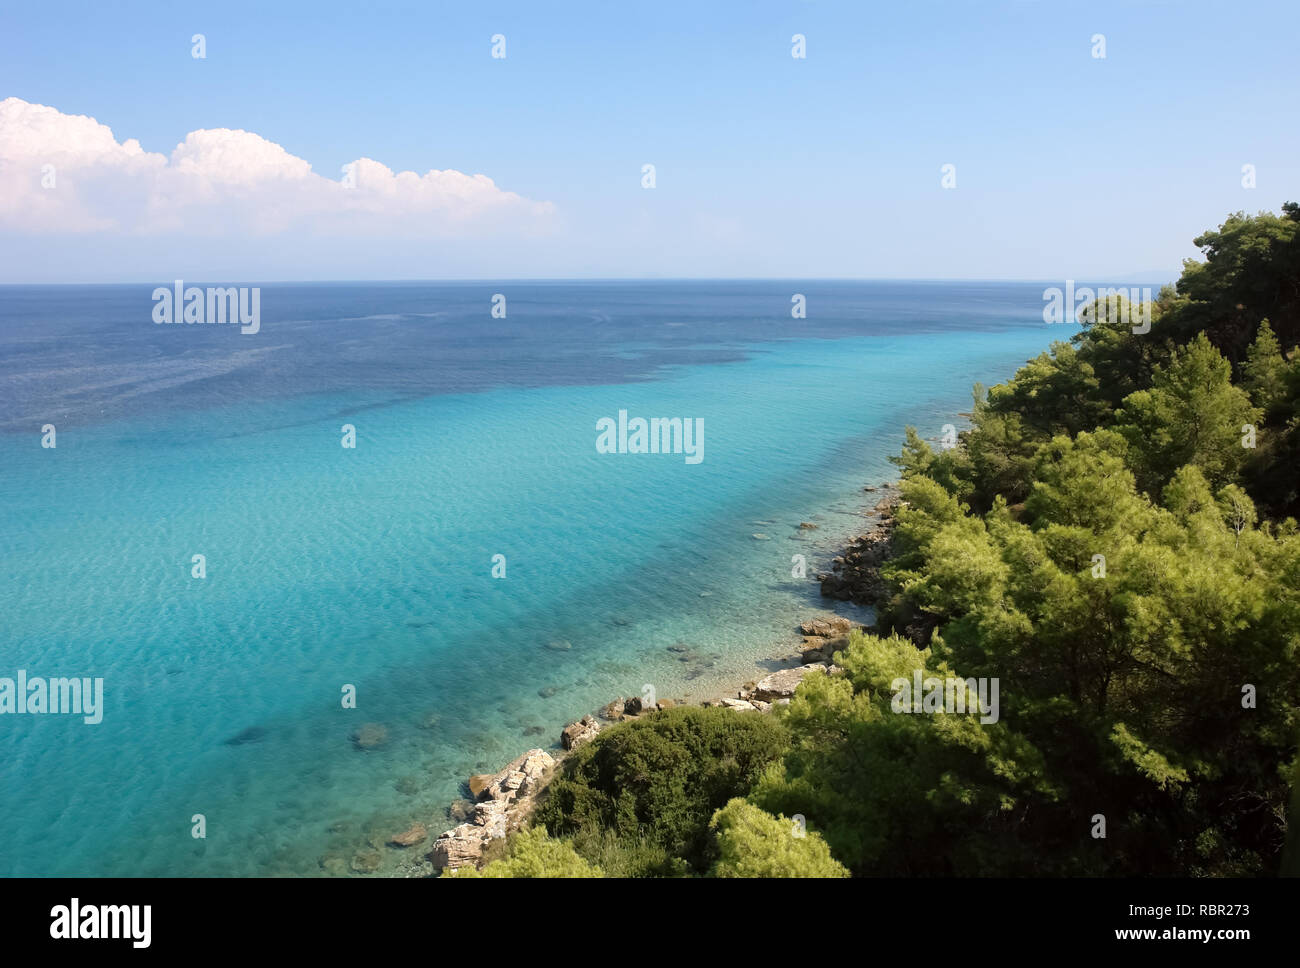 Vue panoramique depuis la colline sur la côte avec de l'eau cristalline de la mer couleur turquoise, la péninsule de Halkidiki, Grèce. Banque D'Images